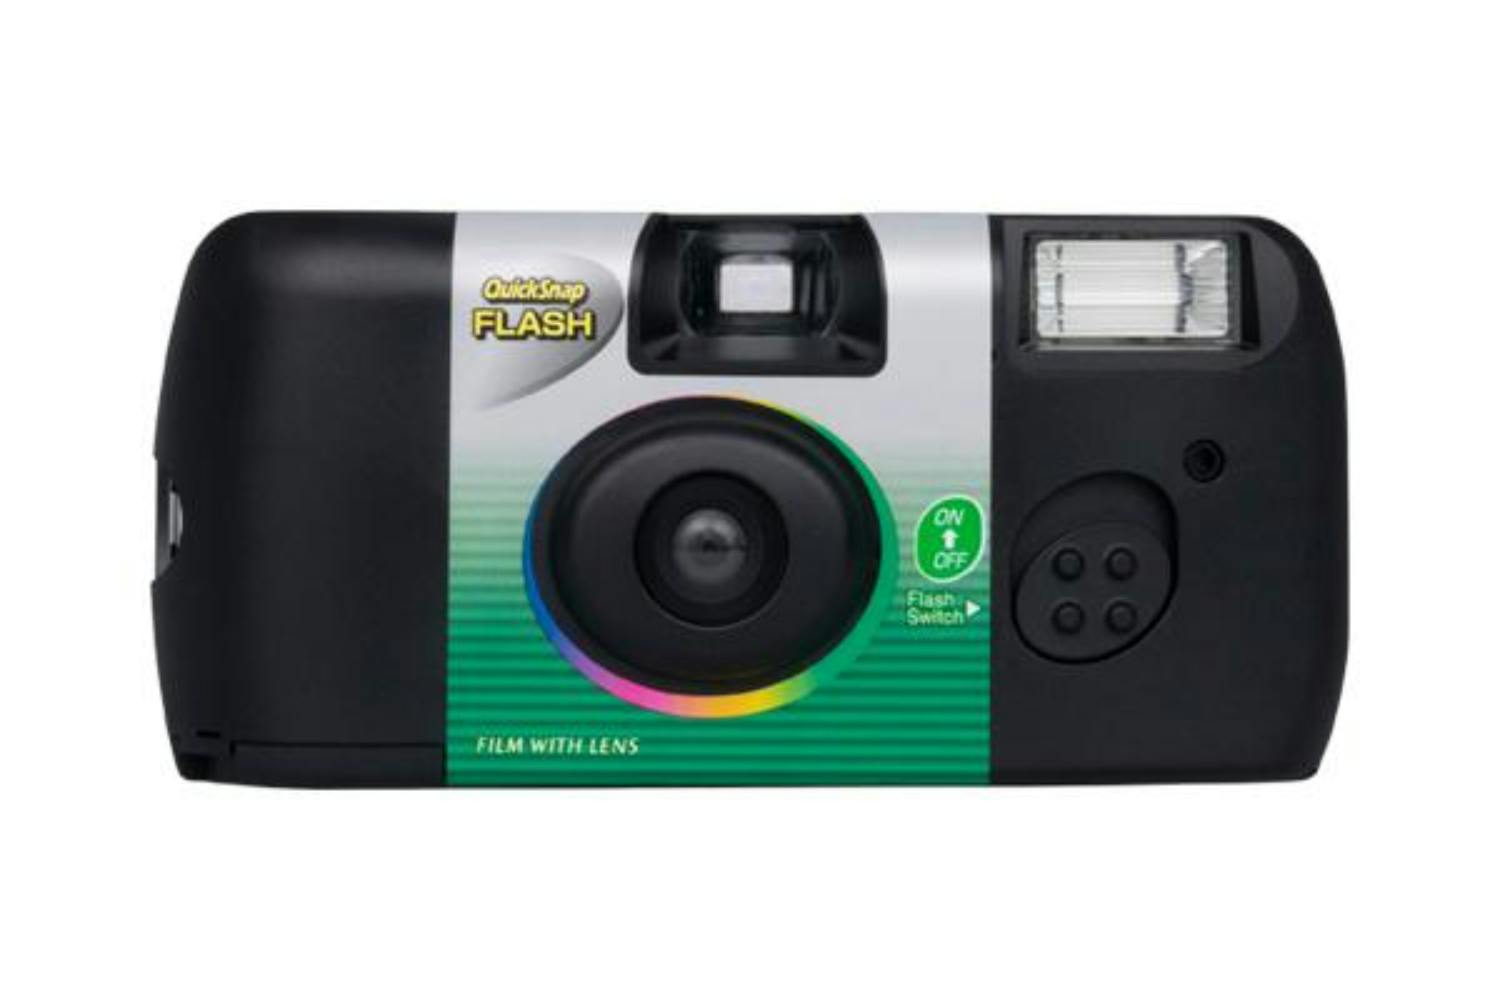 Fujifilm QuickSnap Flash Camera